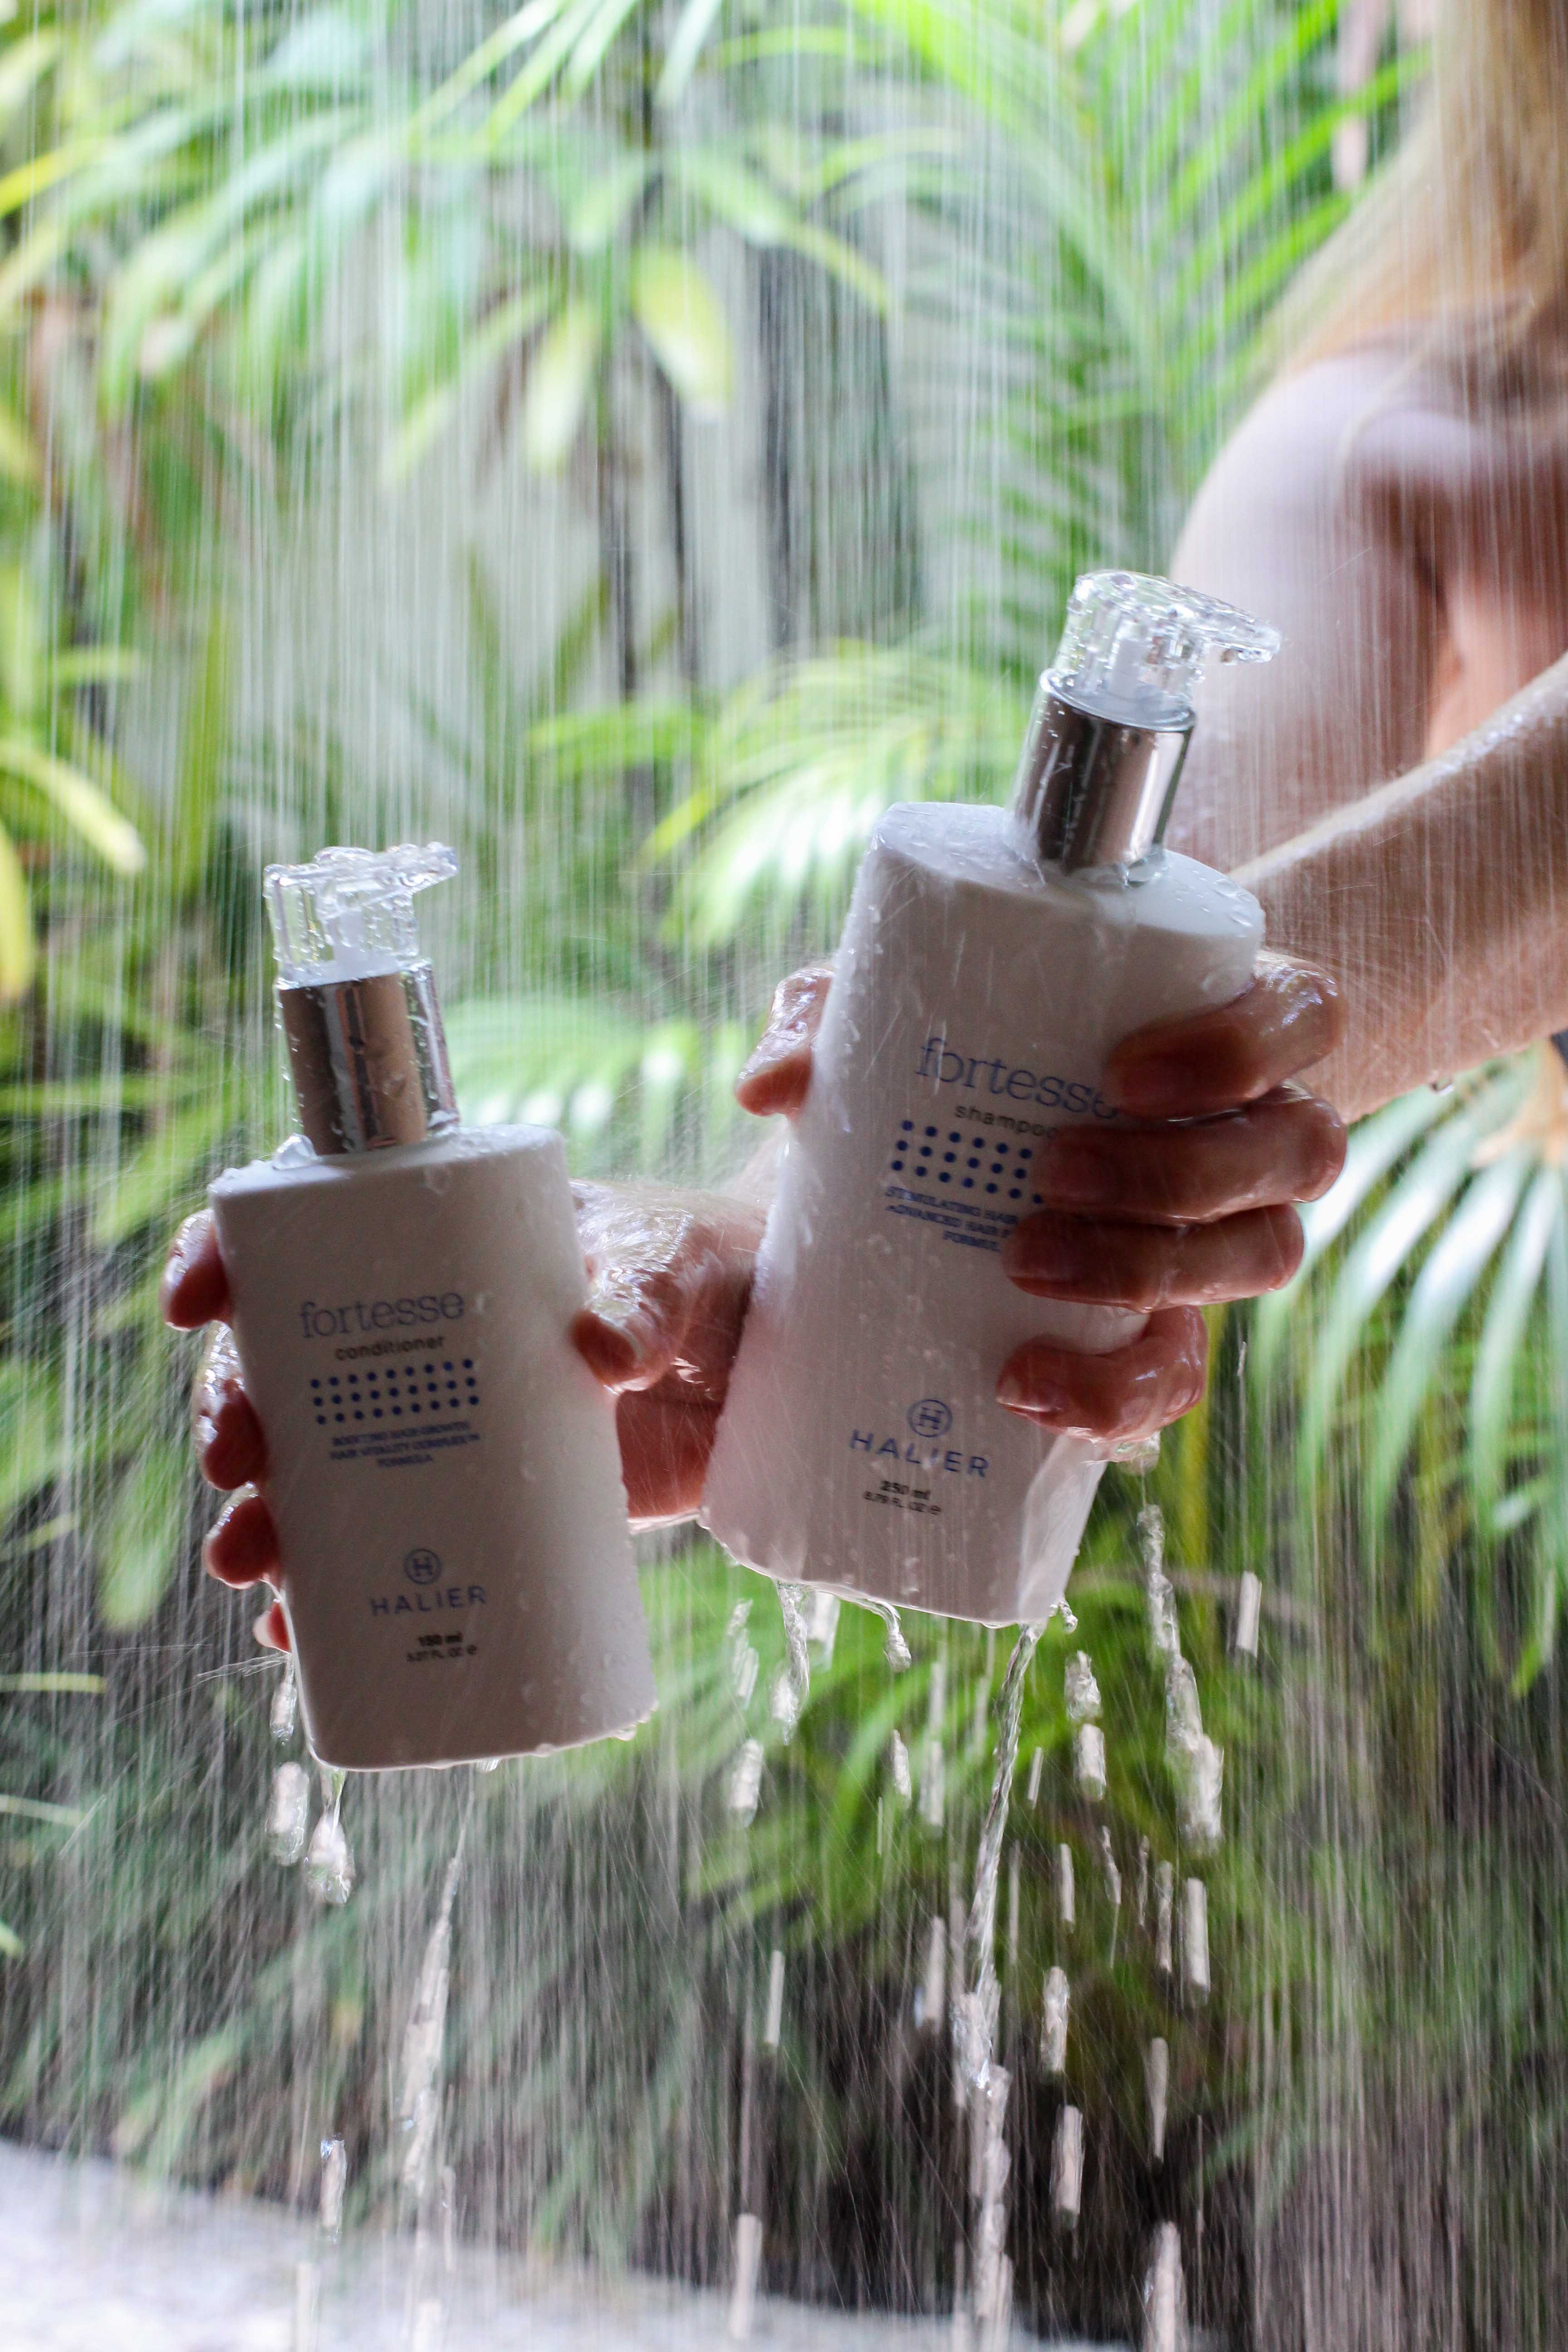 Haarpflege Halier Fortesse Shampoo Conditioner Test gesundes kräftiges Haar Beauty Blog Bali Dusche Palmen